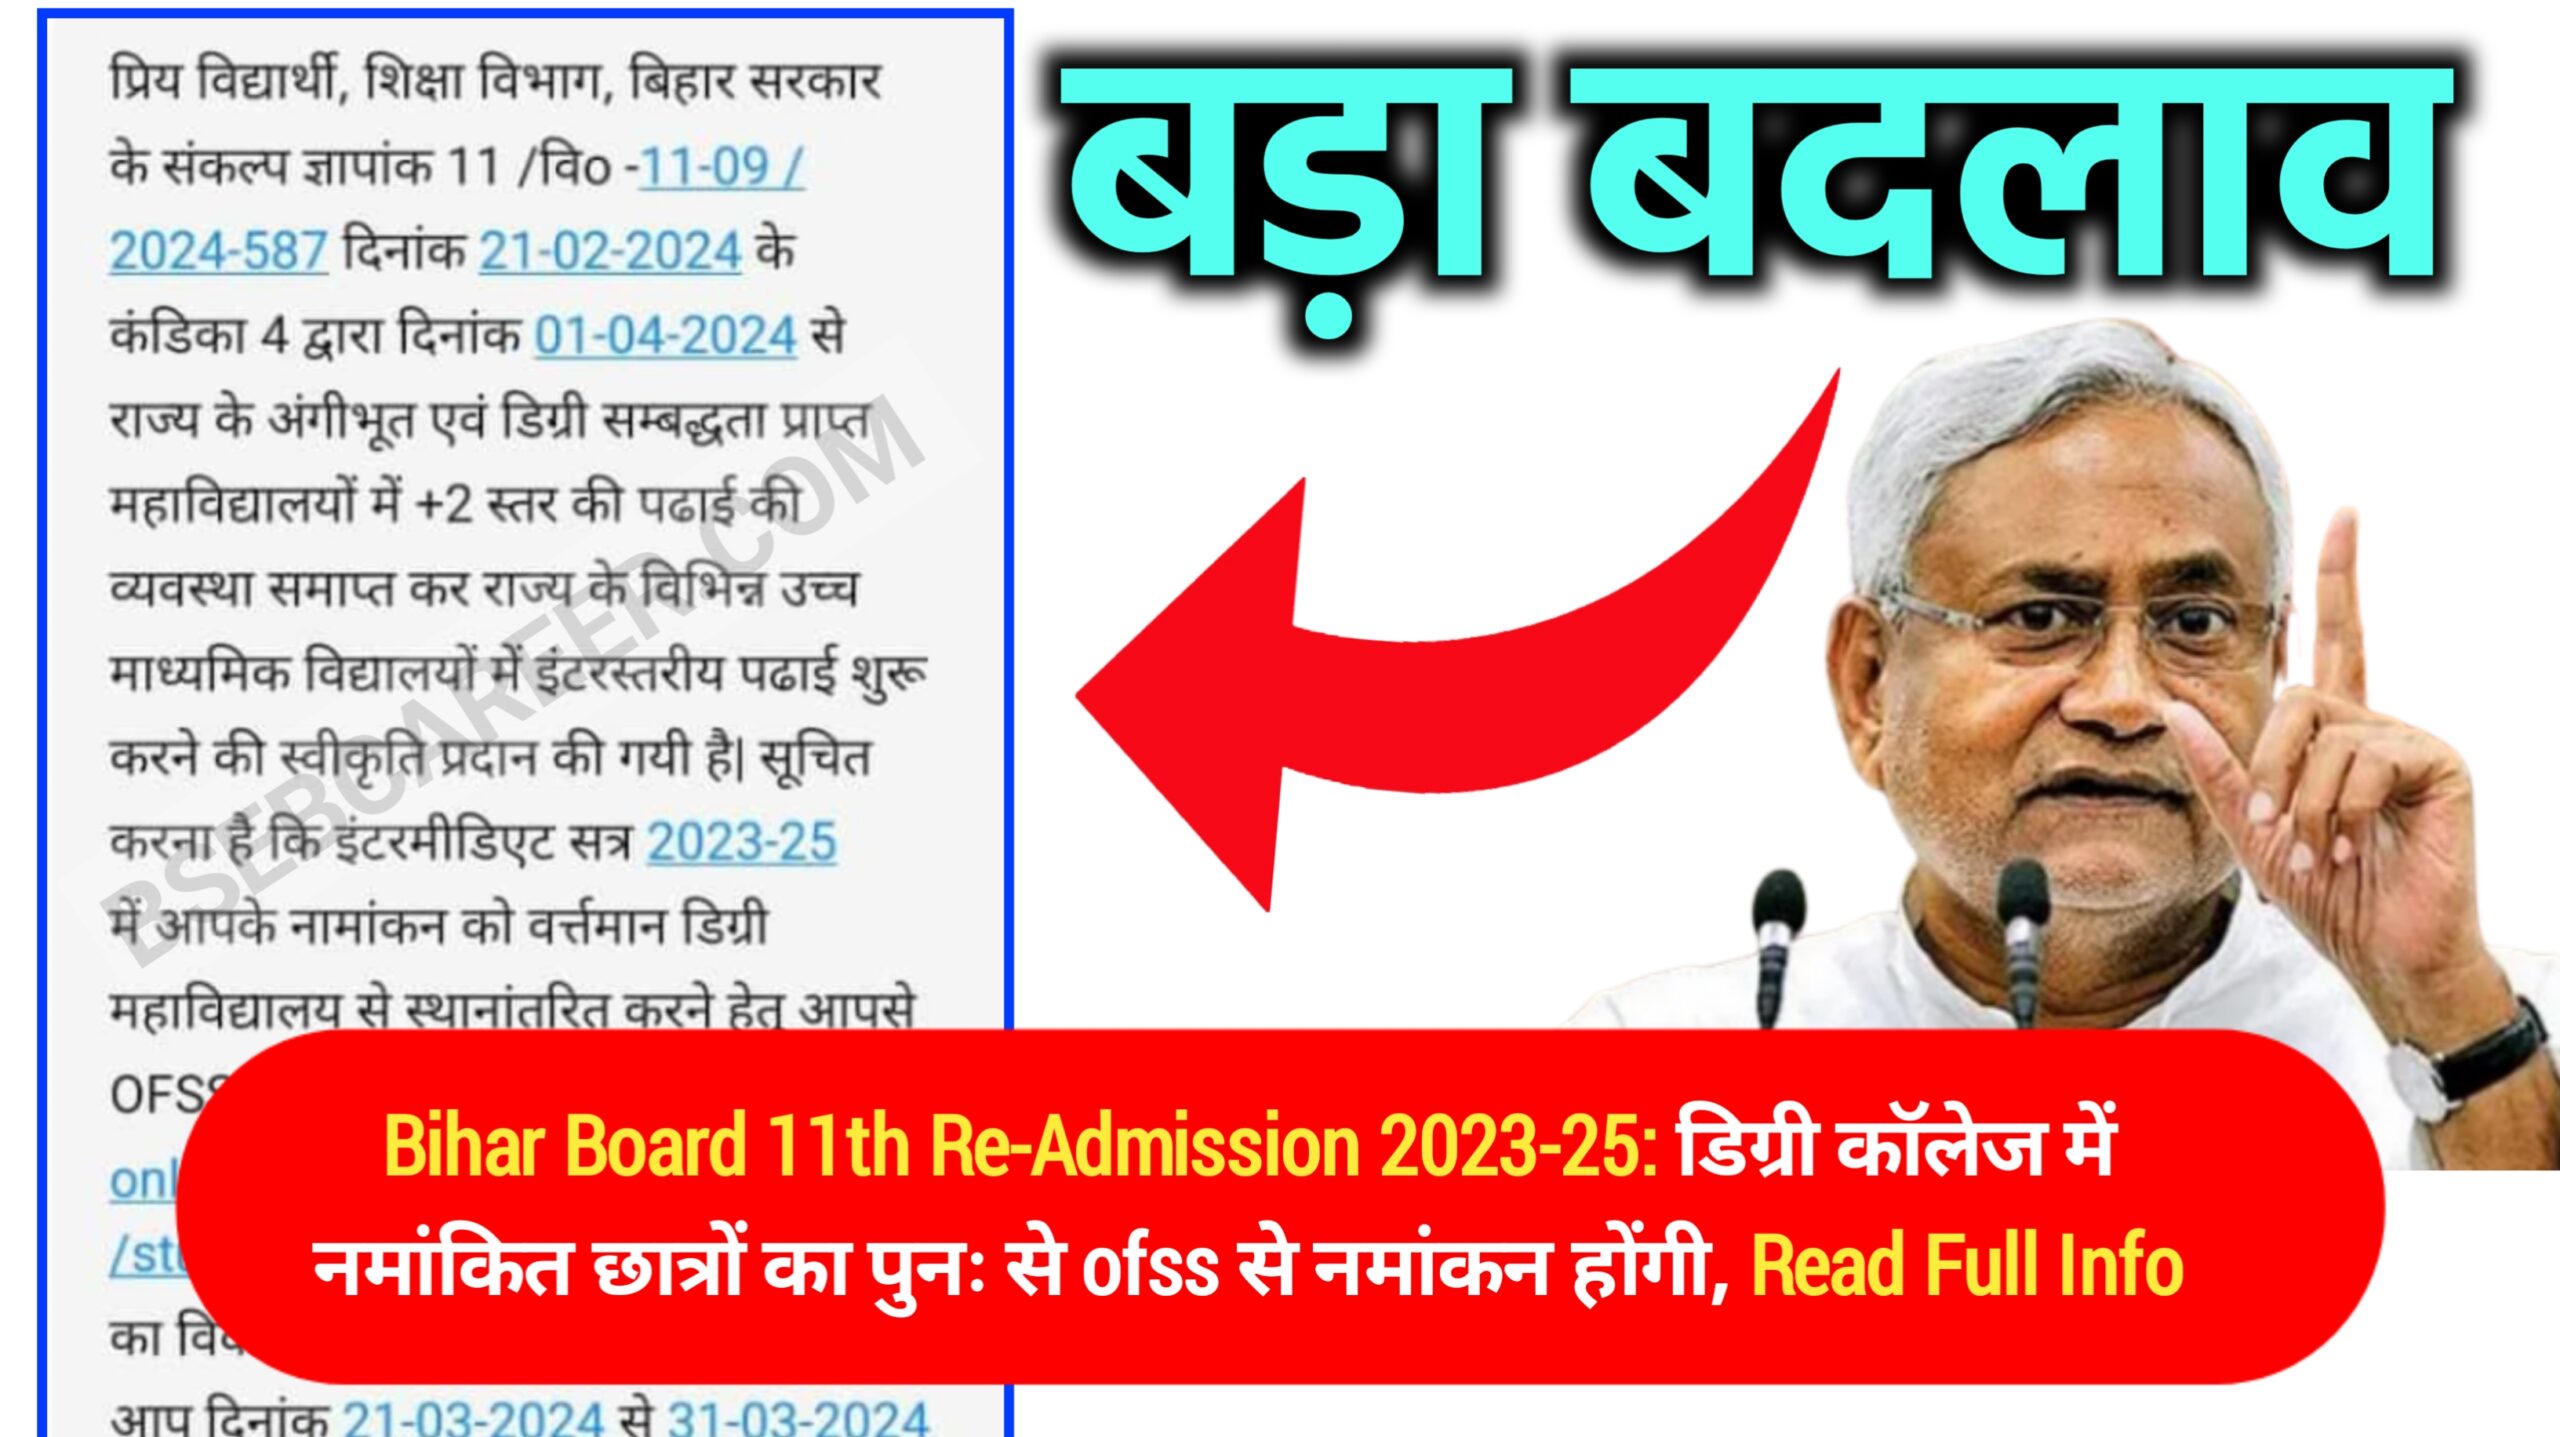 Bihar Board 11th Re-Admission 2023-25